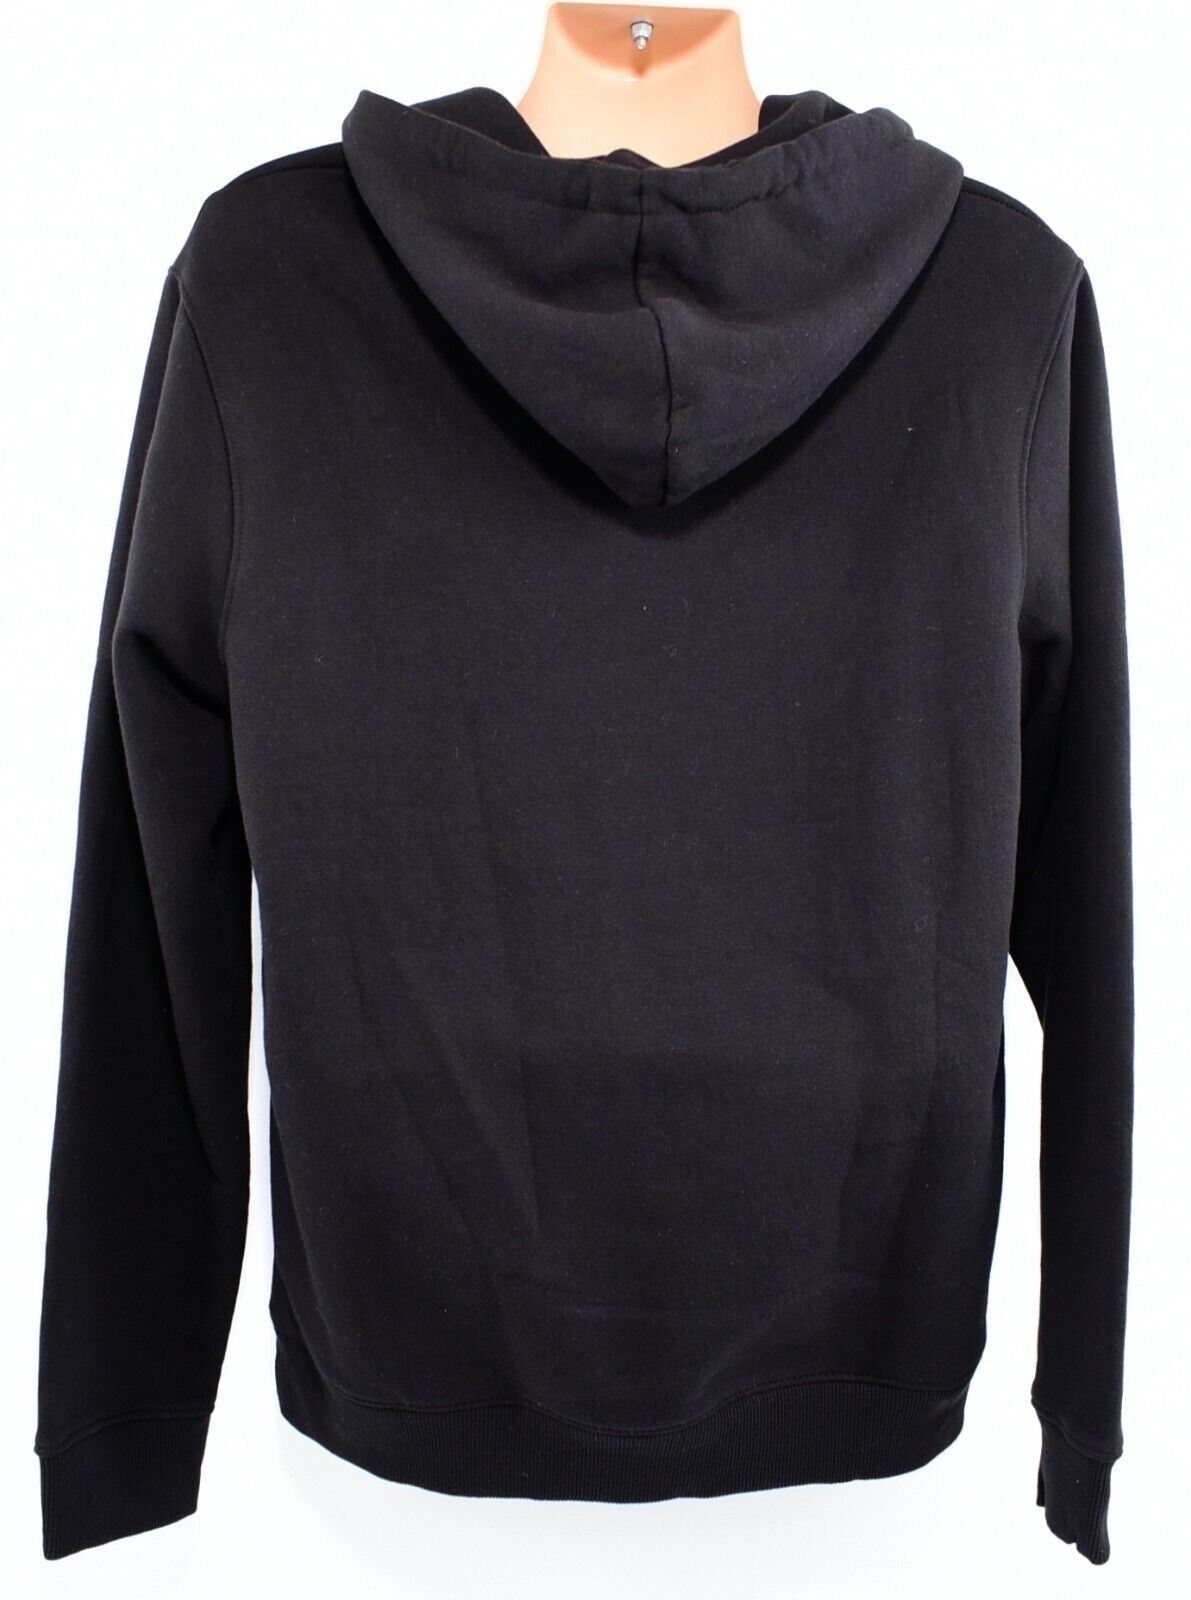 CRIMINAL DAMAGE Men's CAMDEN Hoodie Sweatshirt, Black with White Logo, size XL